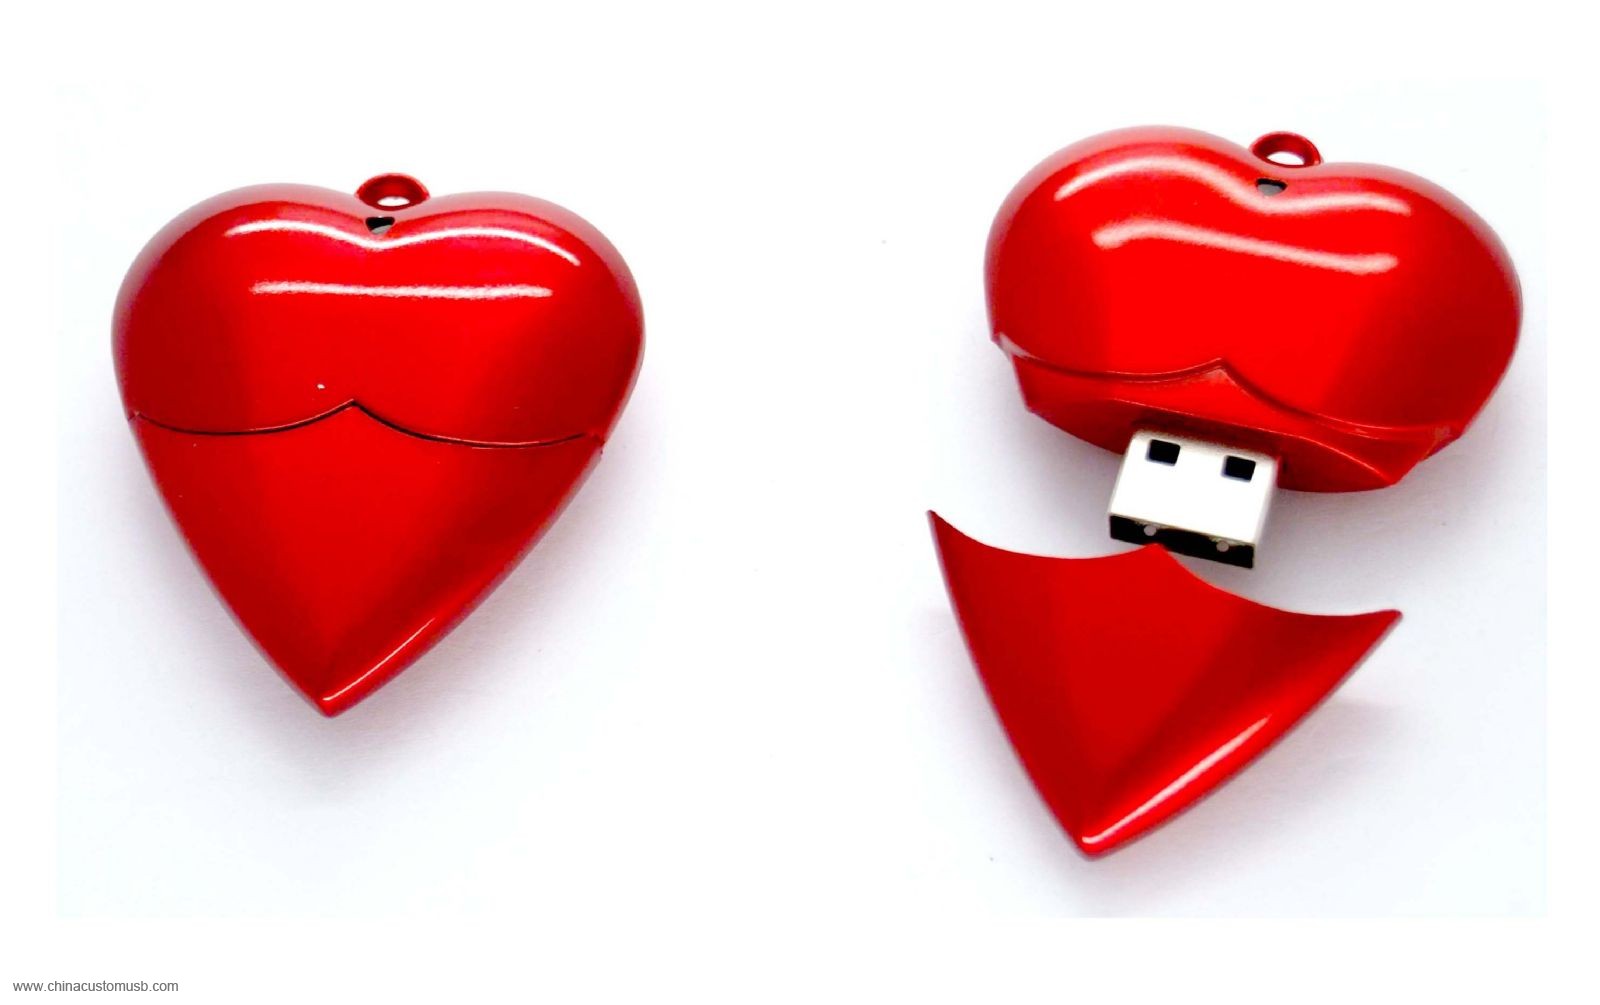  القلب شكل قرص فلاش USB 3 